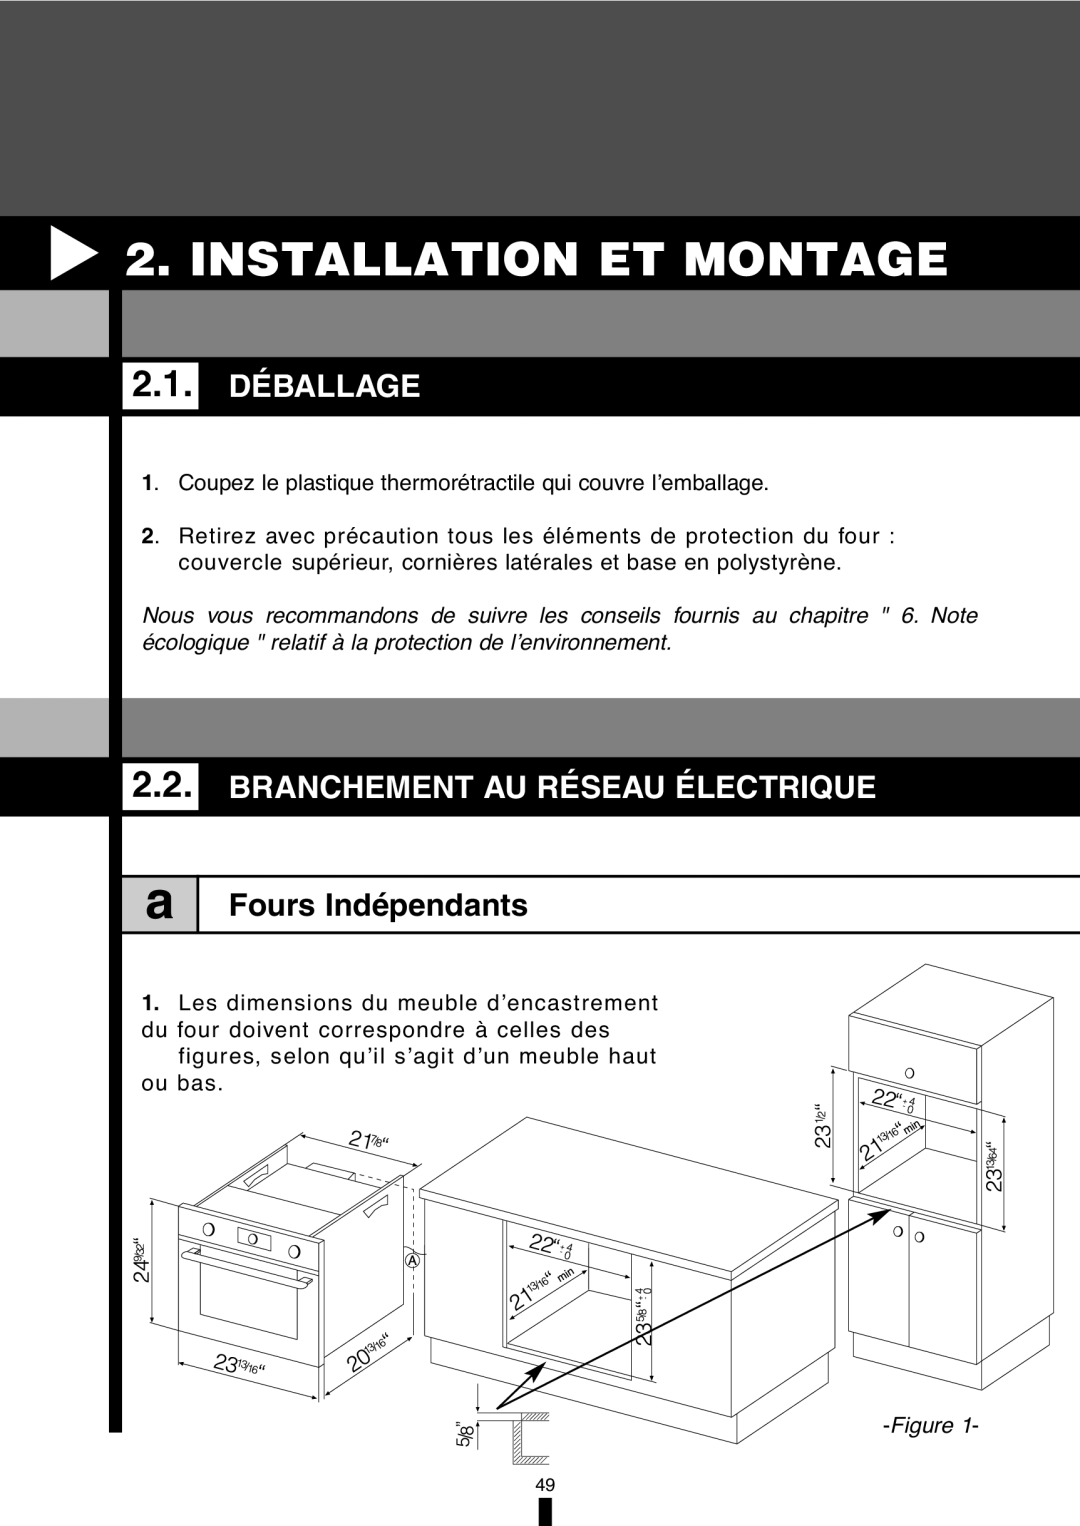 Fagor America 5HA-196X manual Installation Et Montage, 2.1.DÉBALLAGE, Branchement Au Réseau Électrique, Fours Indépendants 